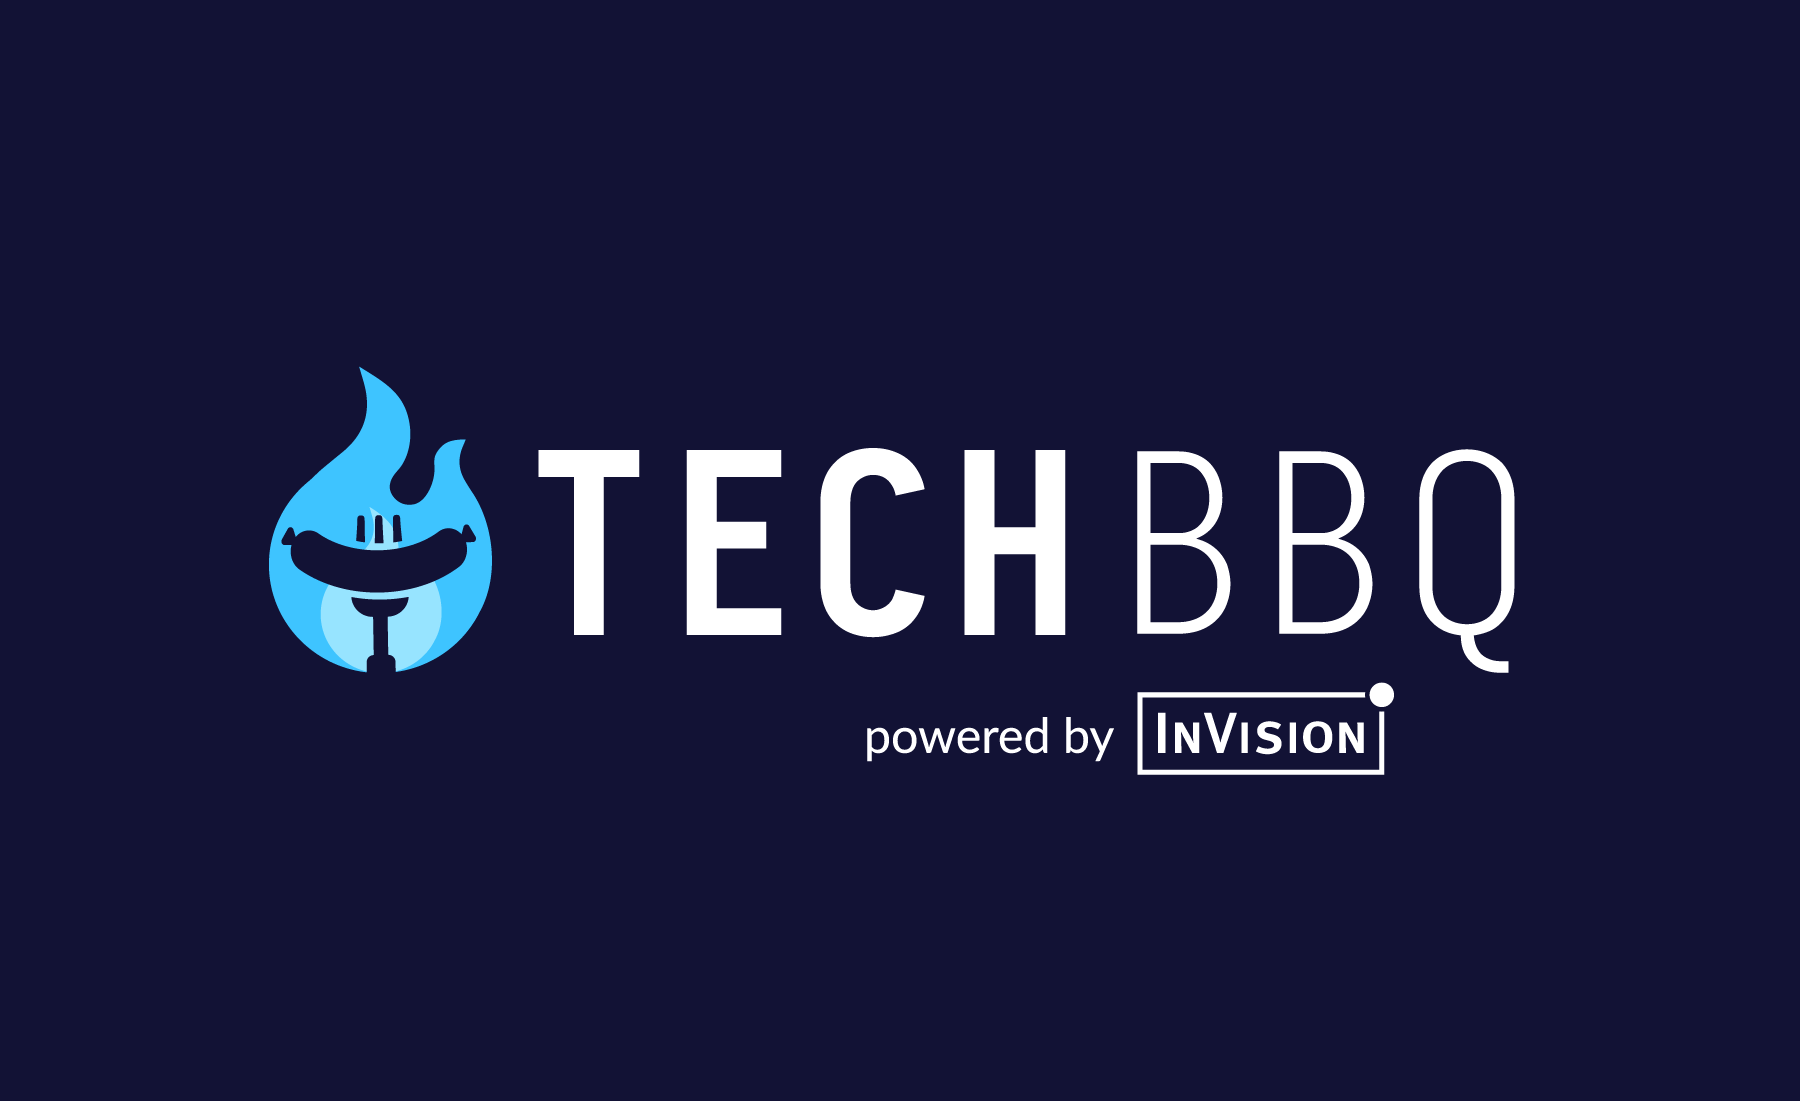 InVision Tech BBQ 2019